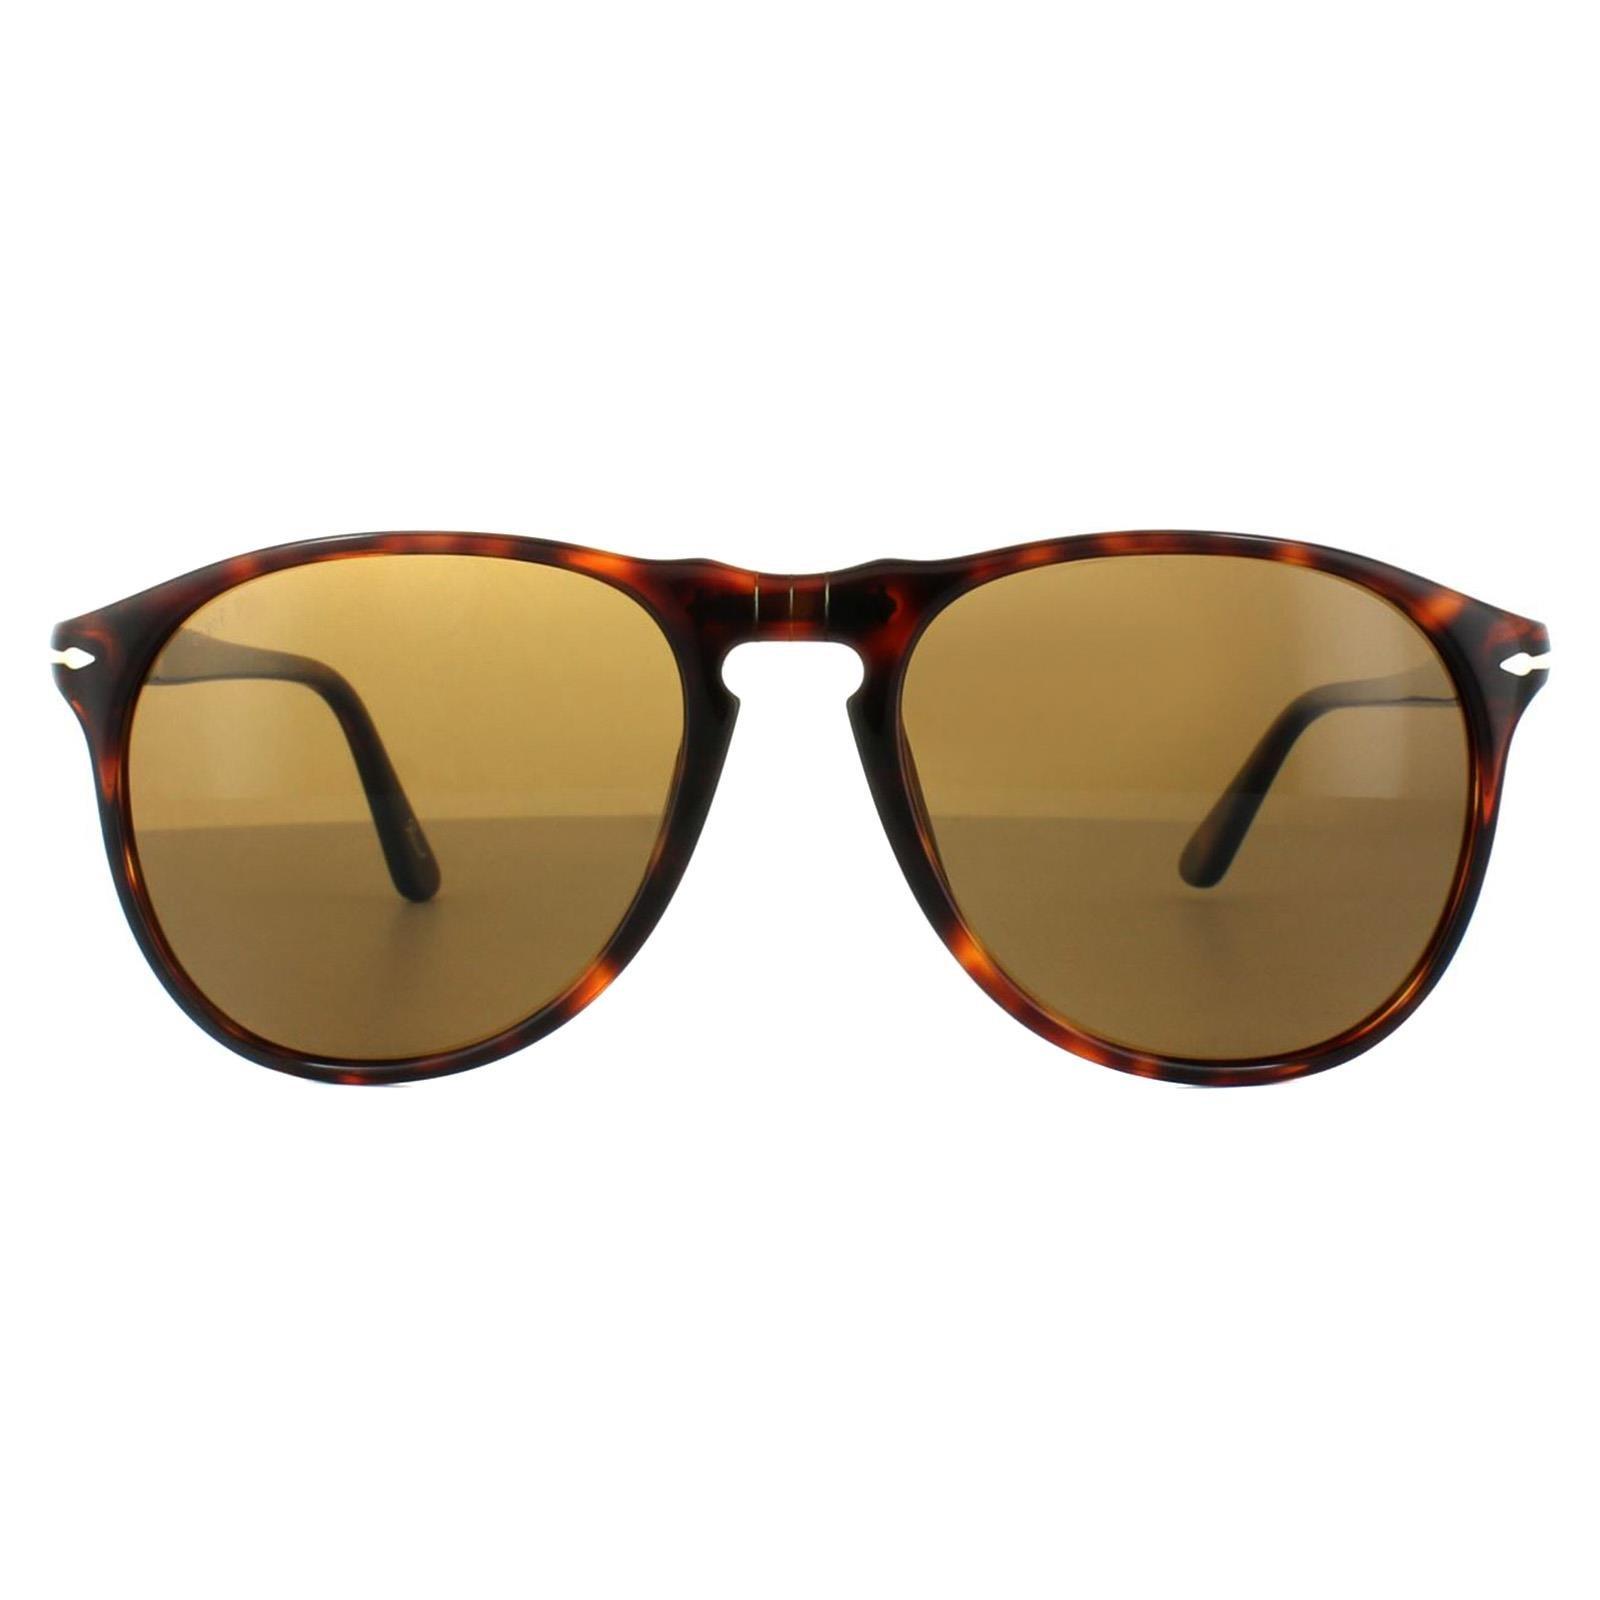 Круглые поляризованные солнцезащитные очки Havana Crystal Brown Persol, коричневый